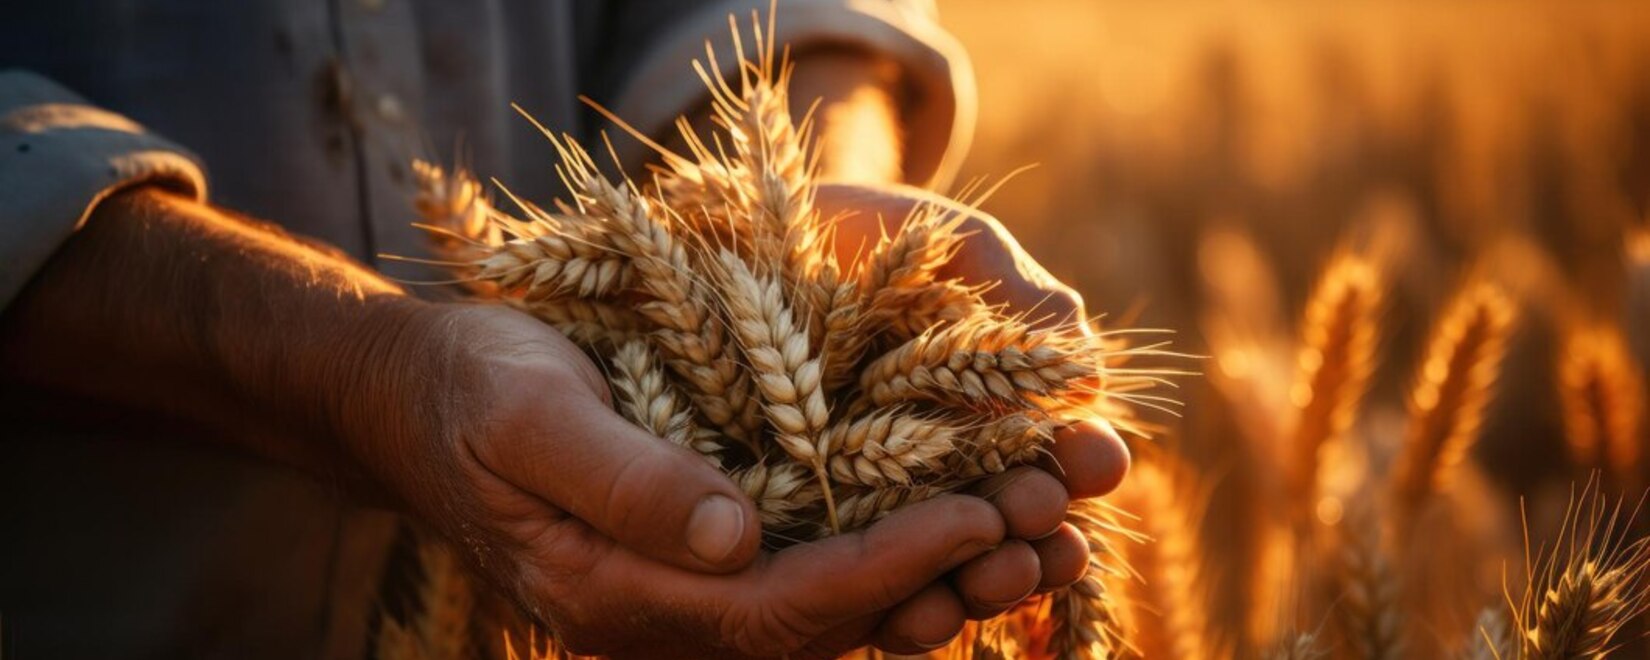 Минсельхоз готов рассмотреть корректировку экспортных пошлин на зерно для смягчения финансового бремени производителей